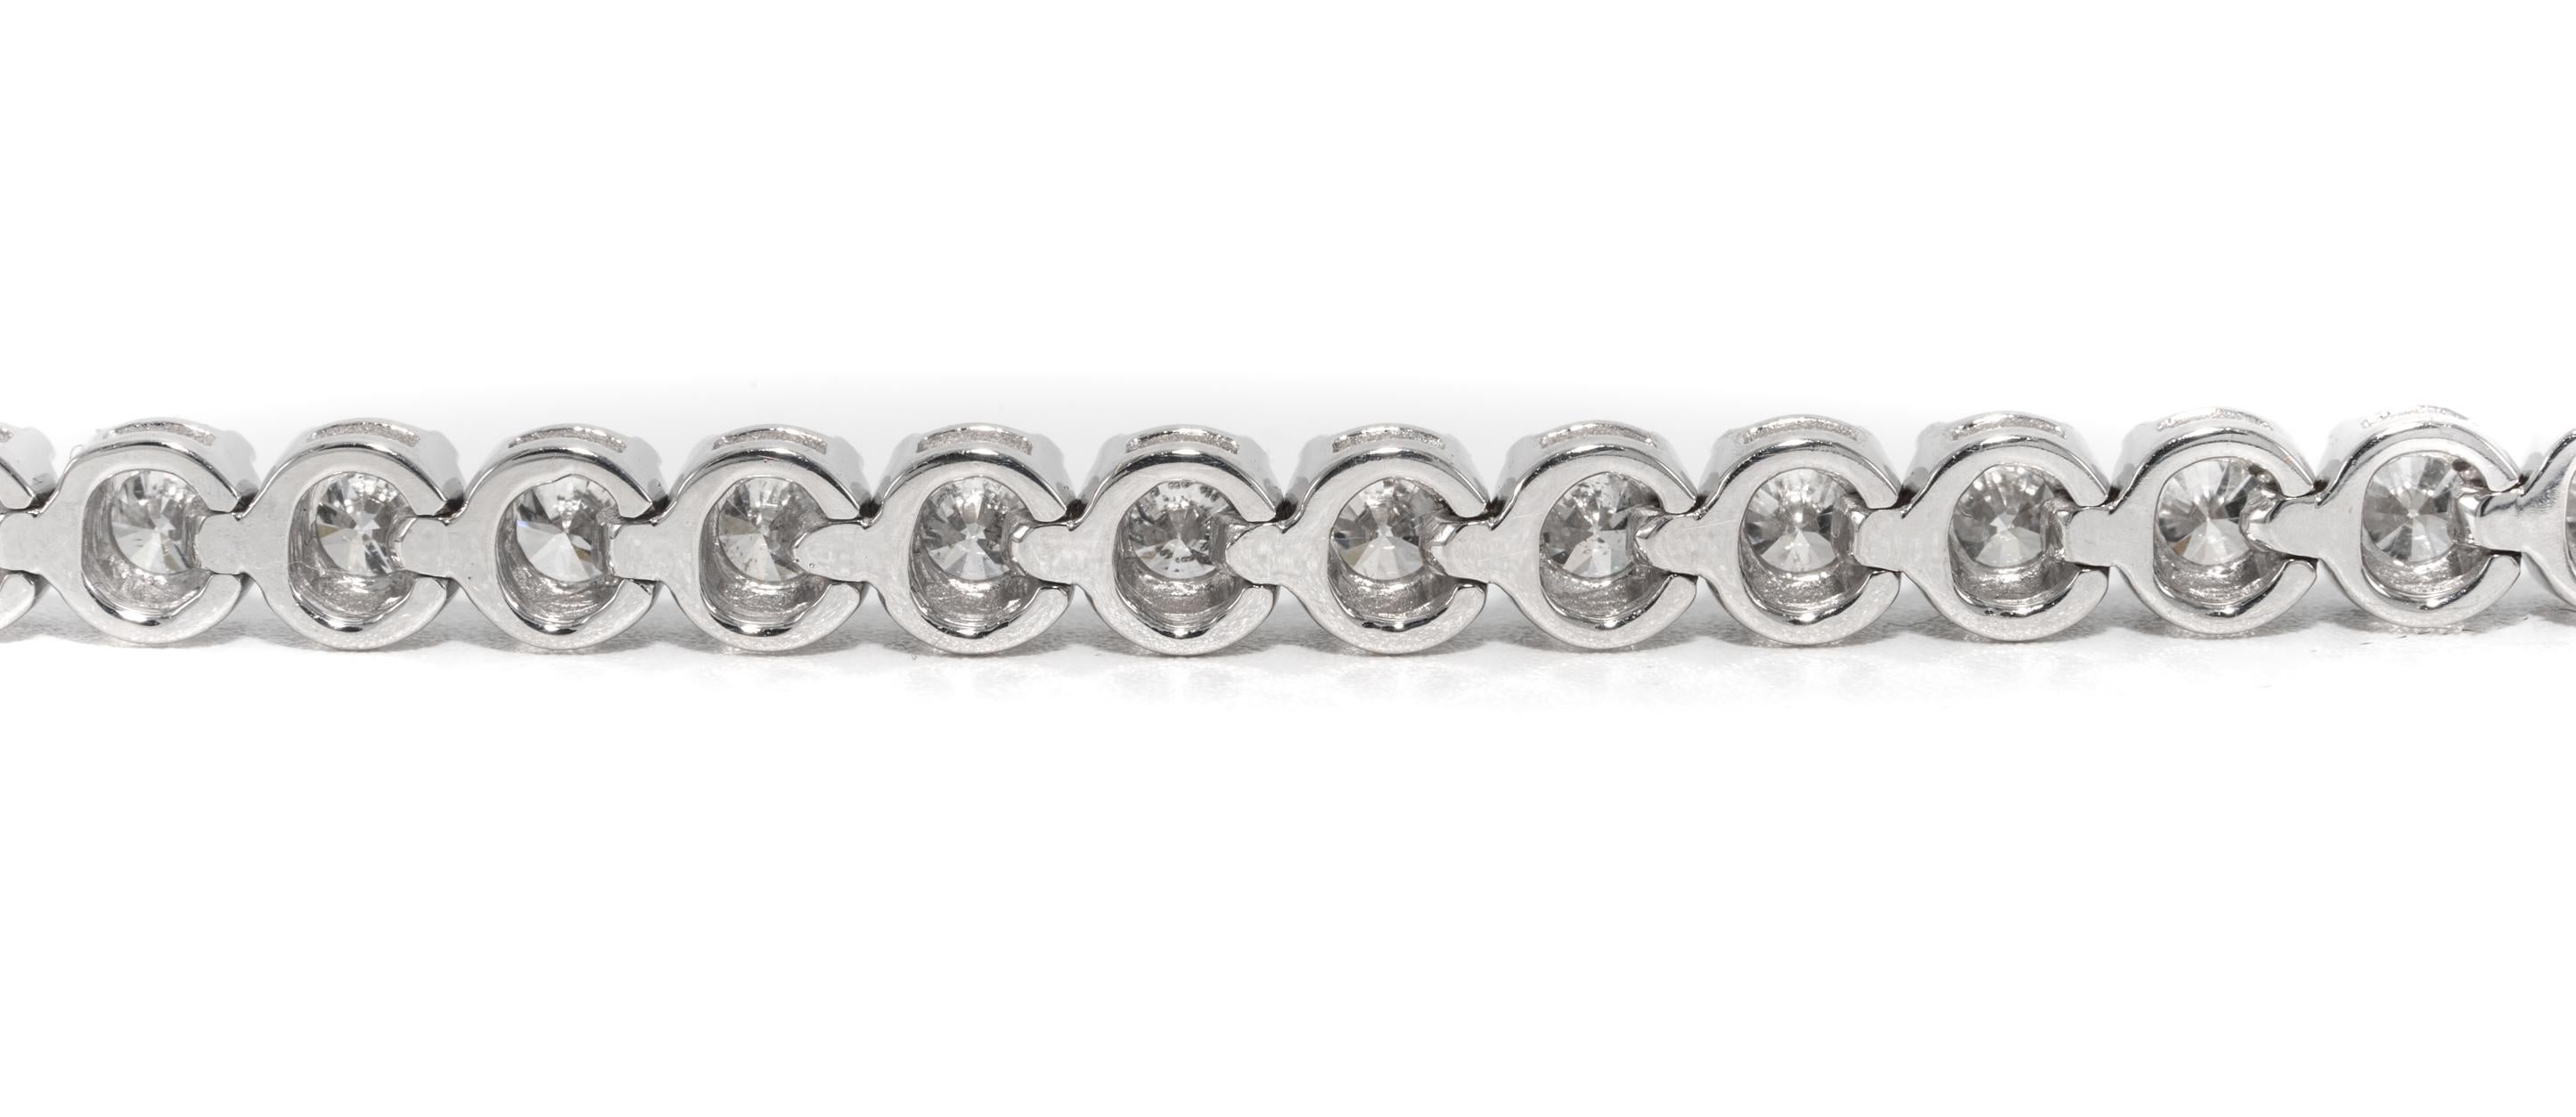 Round Cut Diamond Line Tennis Bracelet, 6.83 Carat Total in 18K, by The Diamond Oak